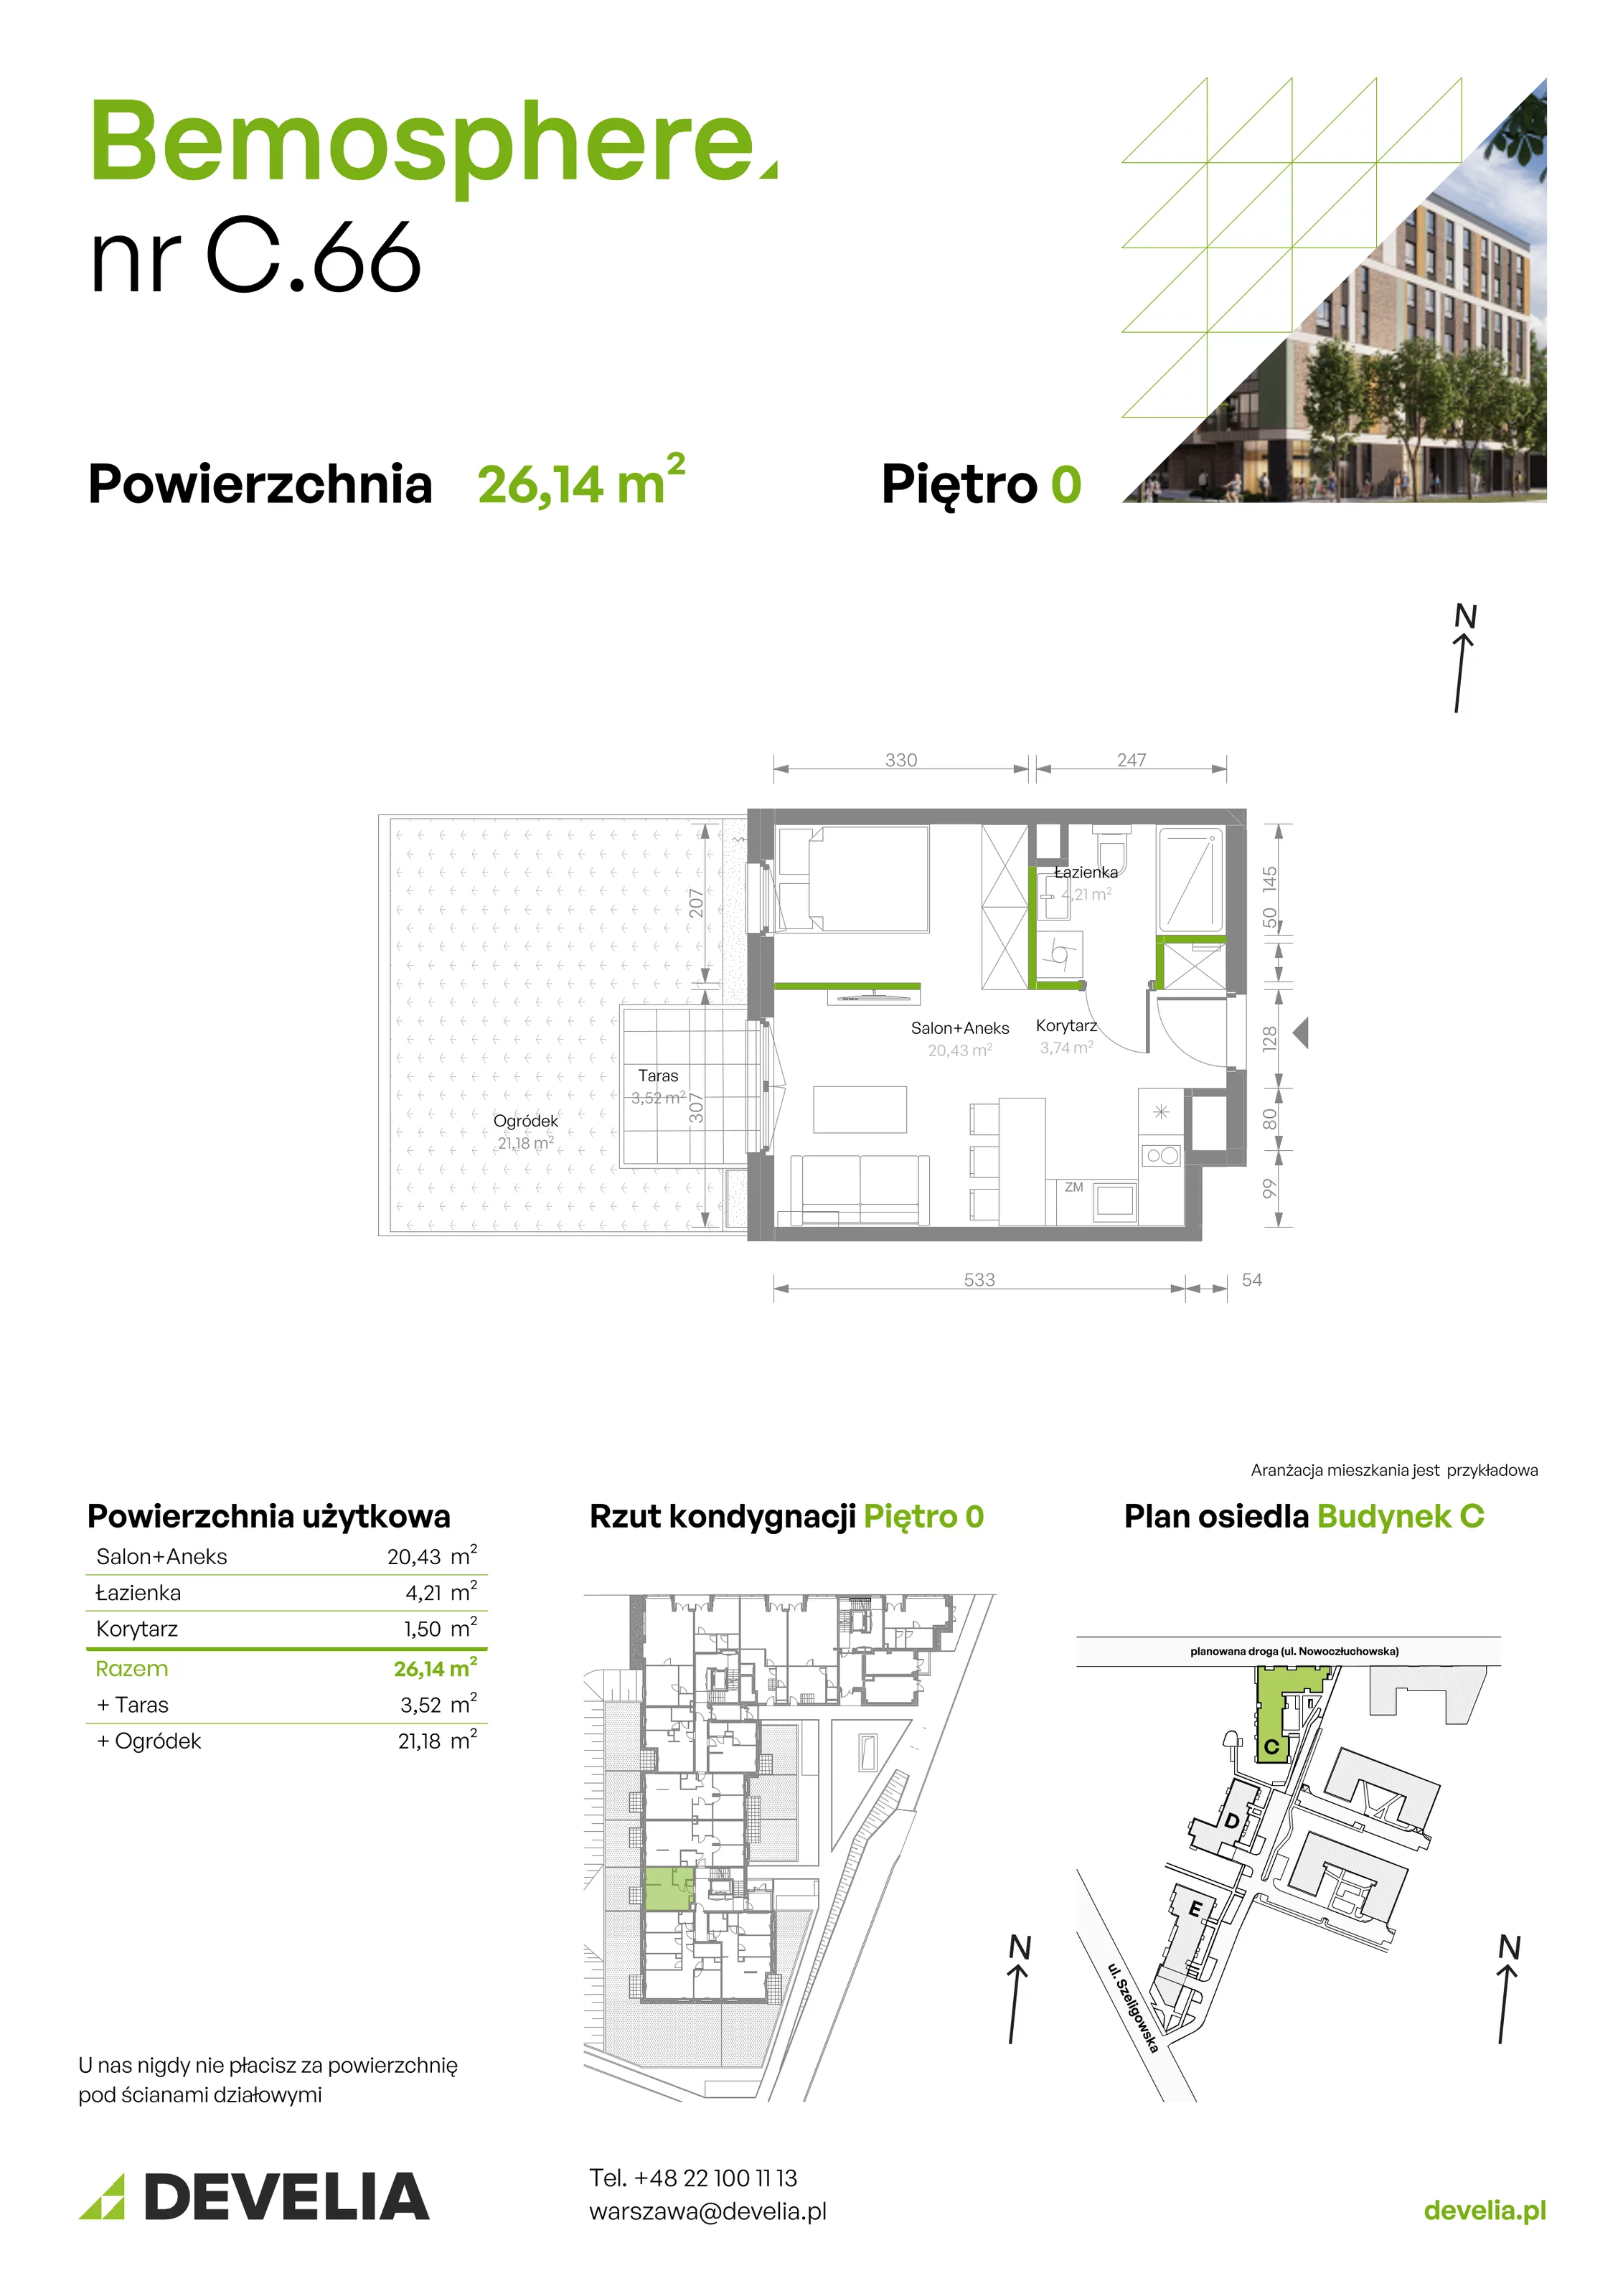 Mieszkanie 28,38 m², parter, oferta nr C/066, Bemosphere, Warszawa, Bemowo, Chrzanów, ul. Szeligowska 24